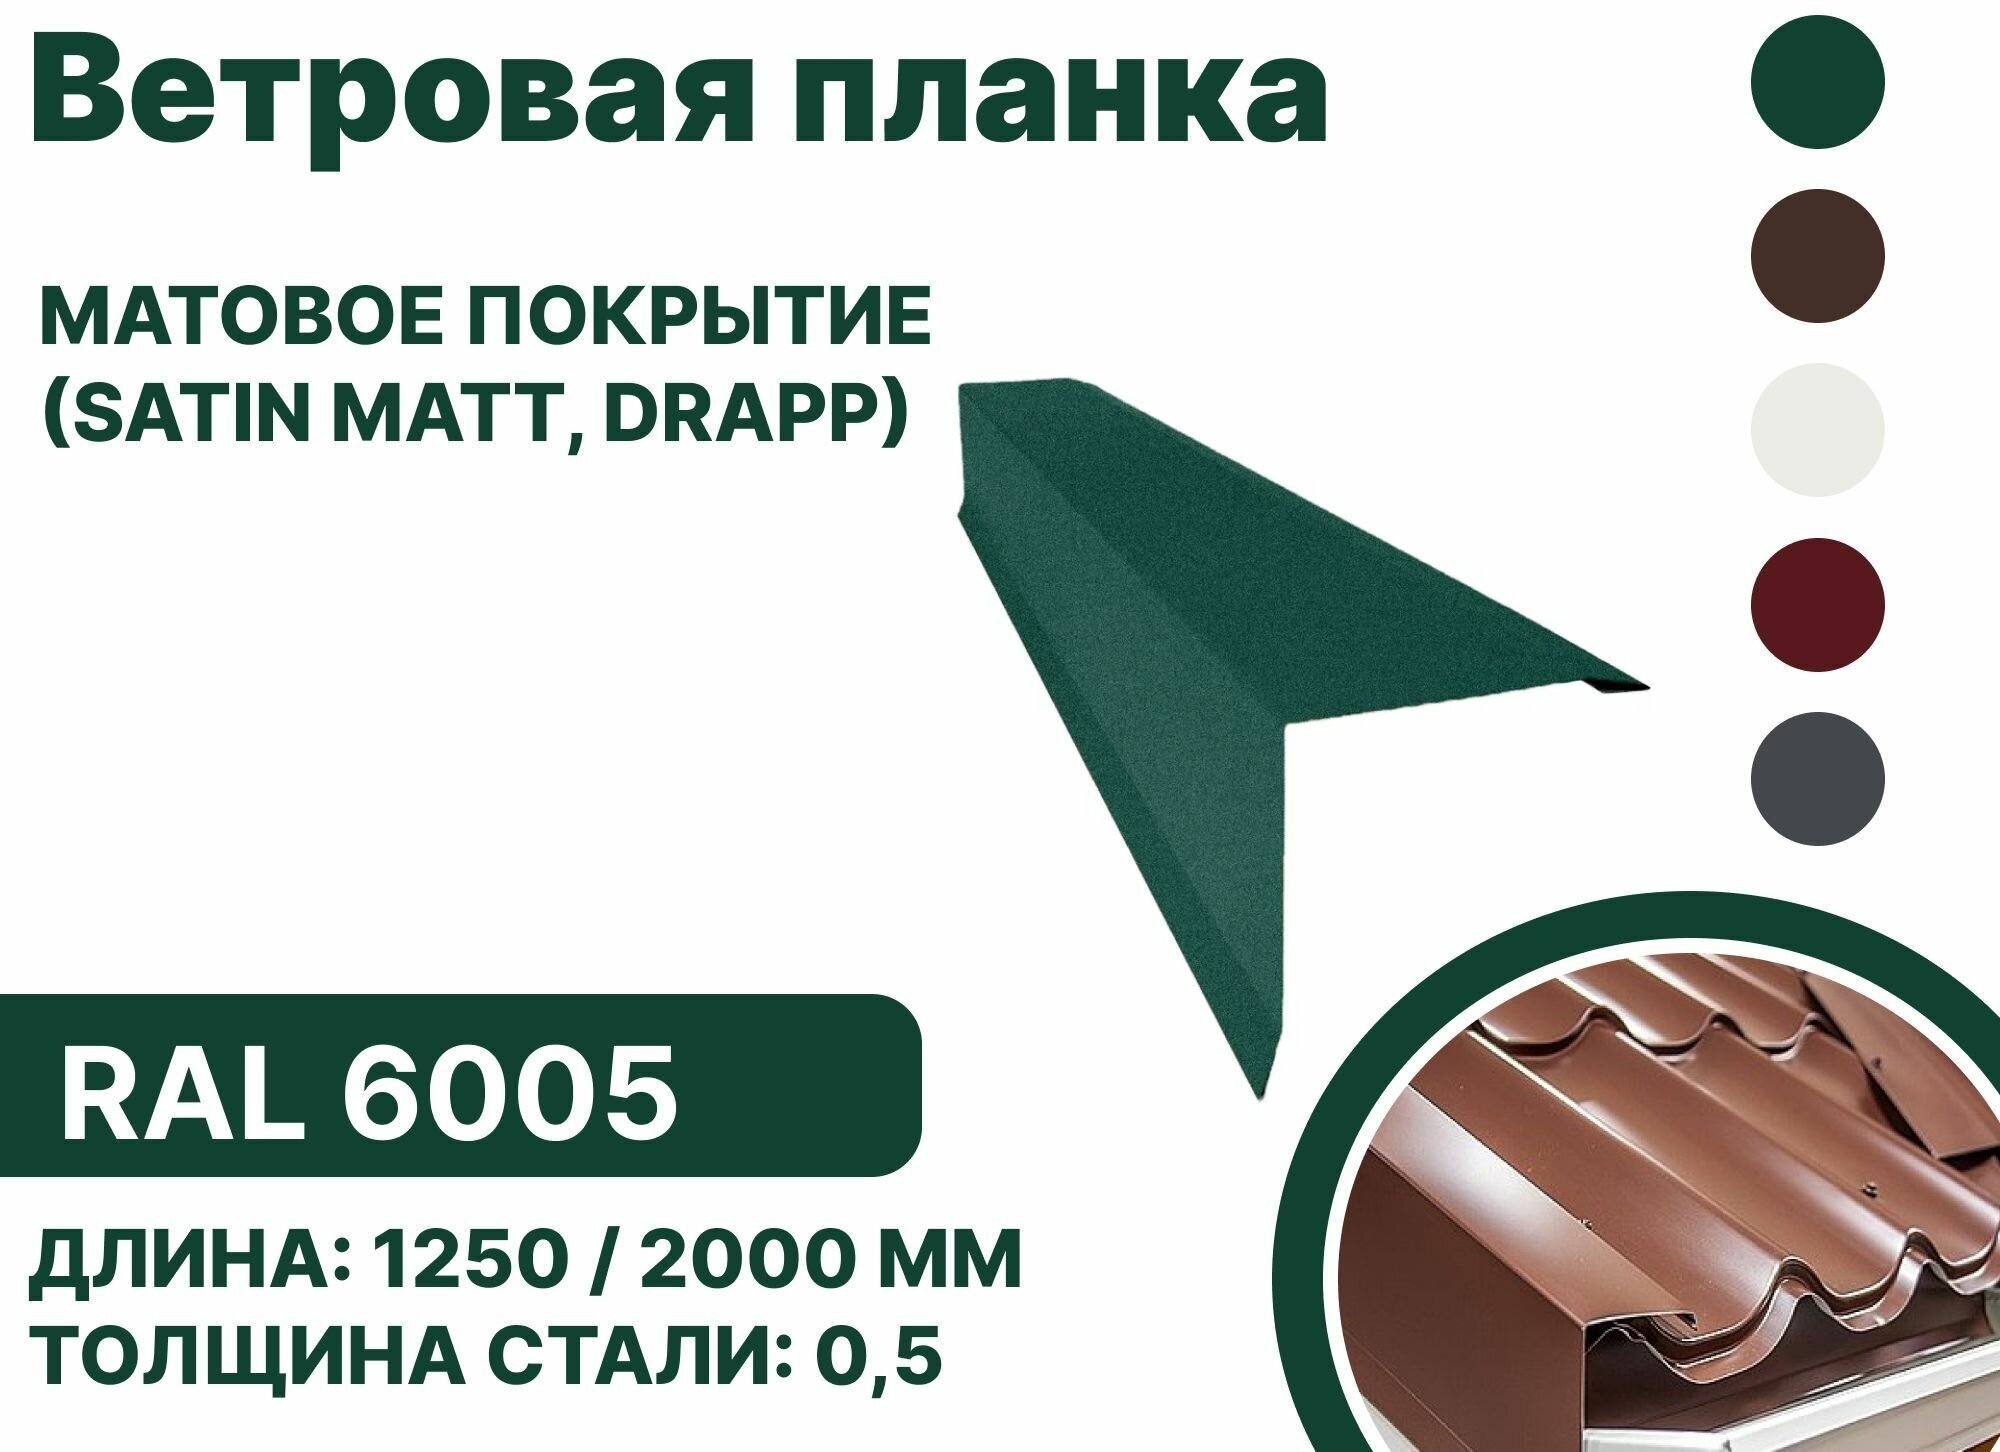 Ветровая планка матовая (Satin matt,drap) для металлочерепицы и гибкой кровли RAL-6005 1250мм 4шт в упаковке - фотография № 1